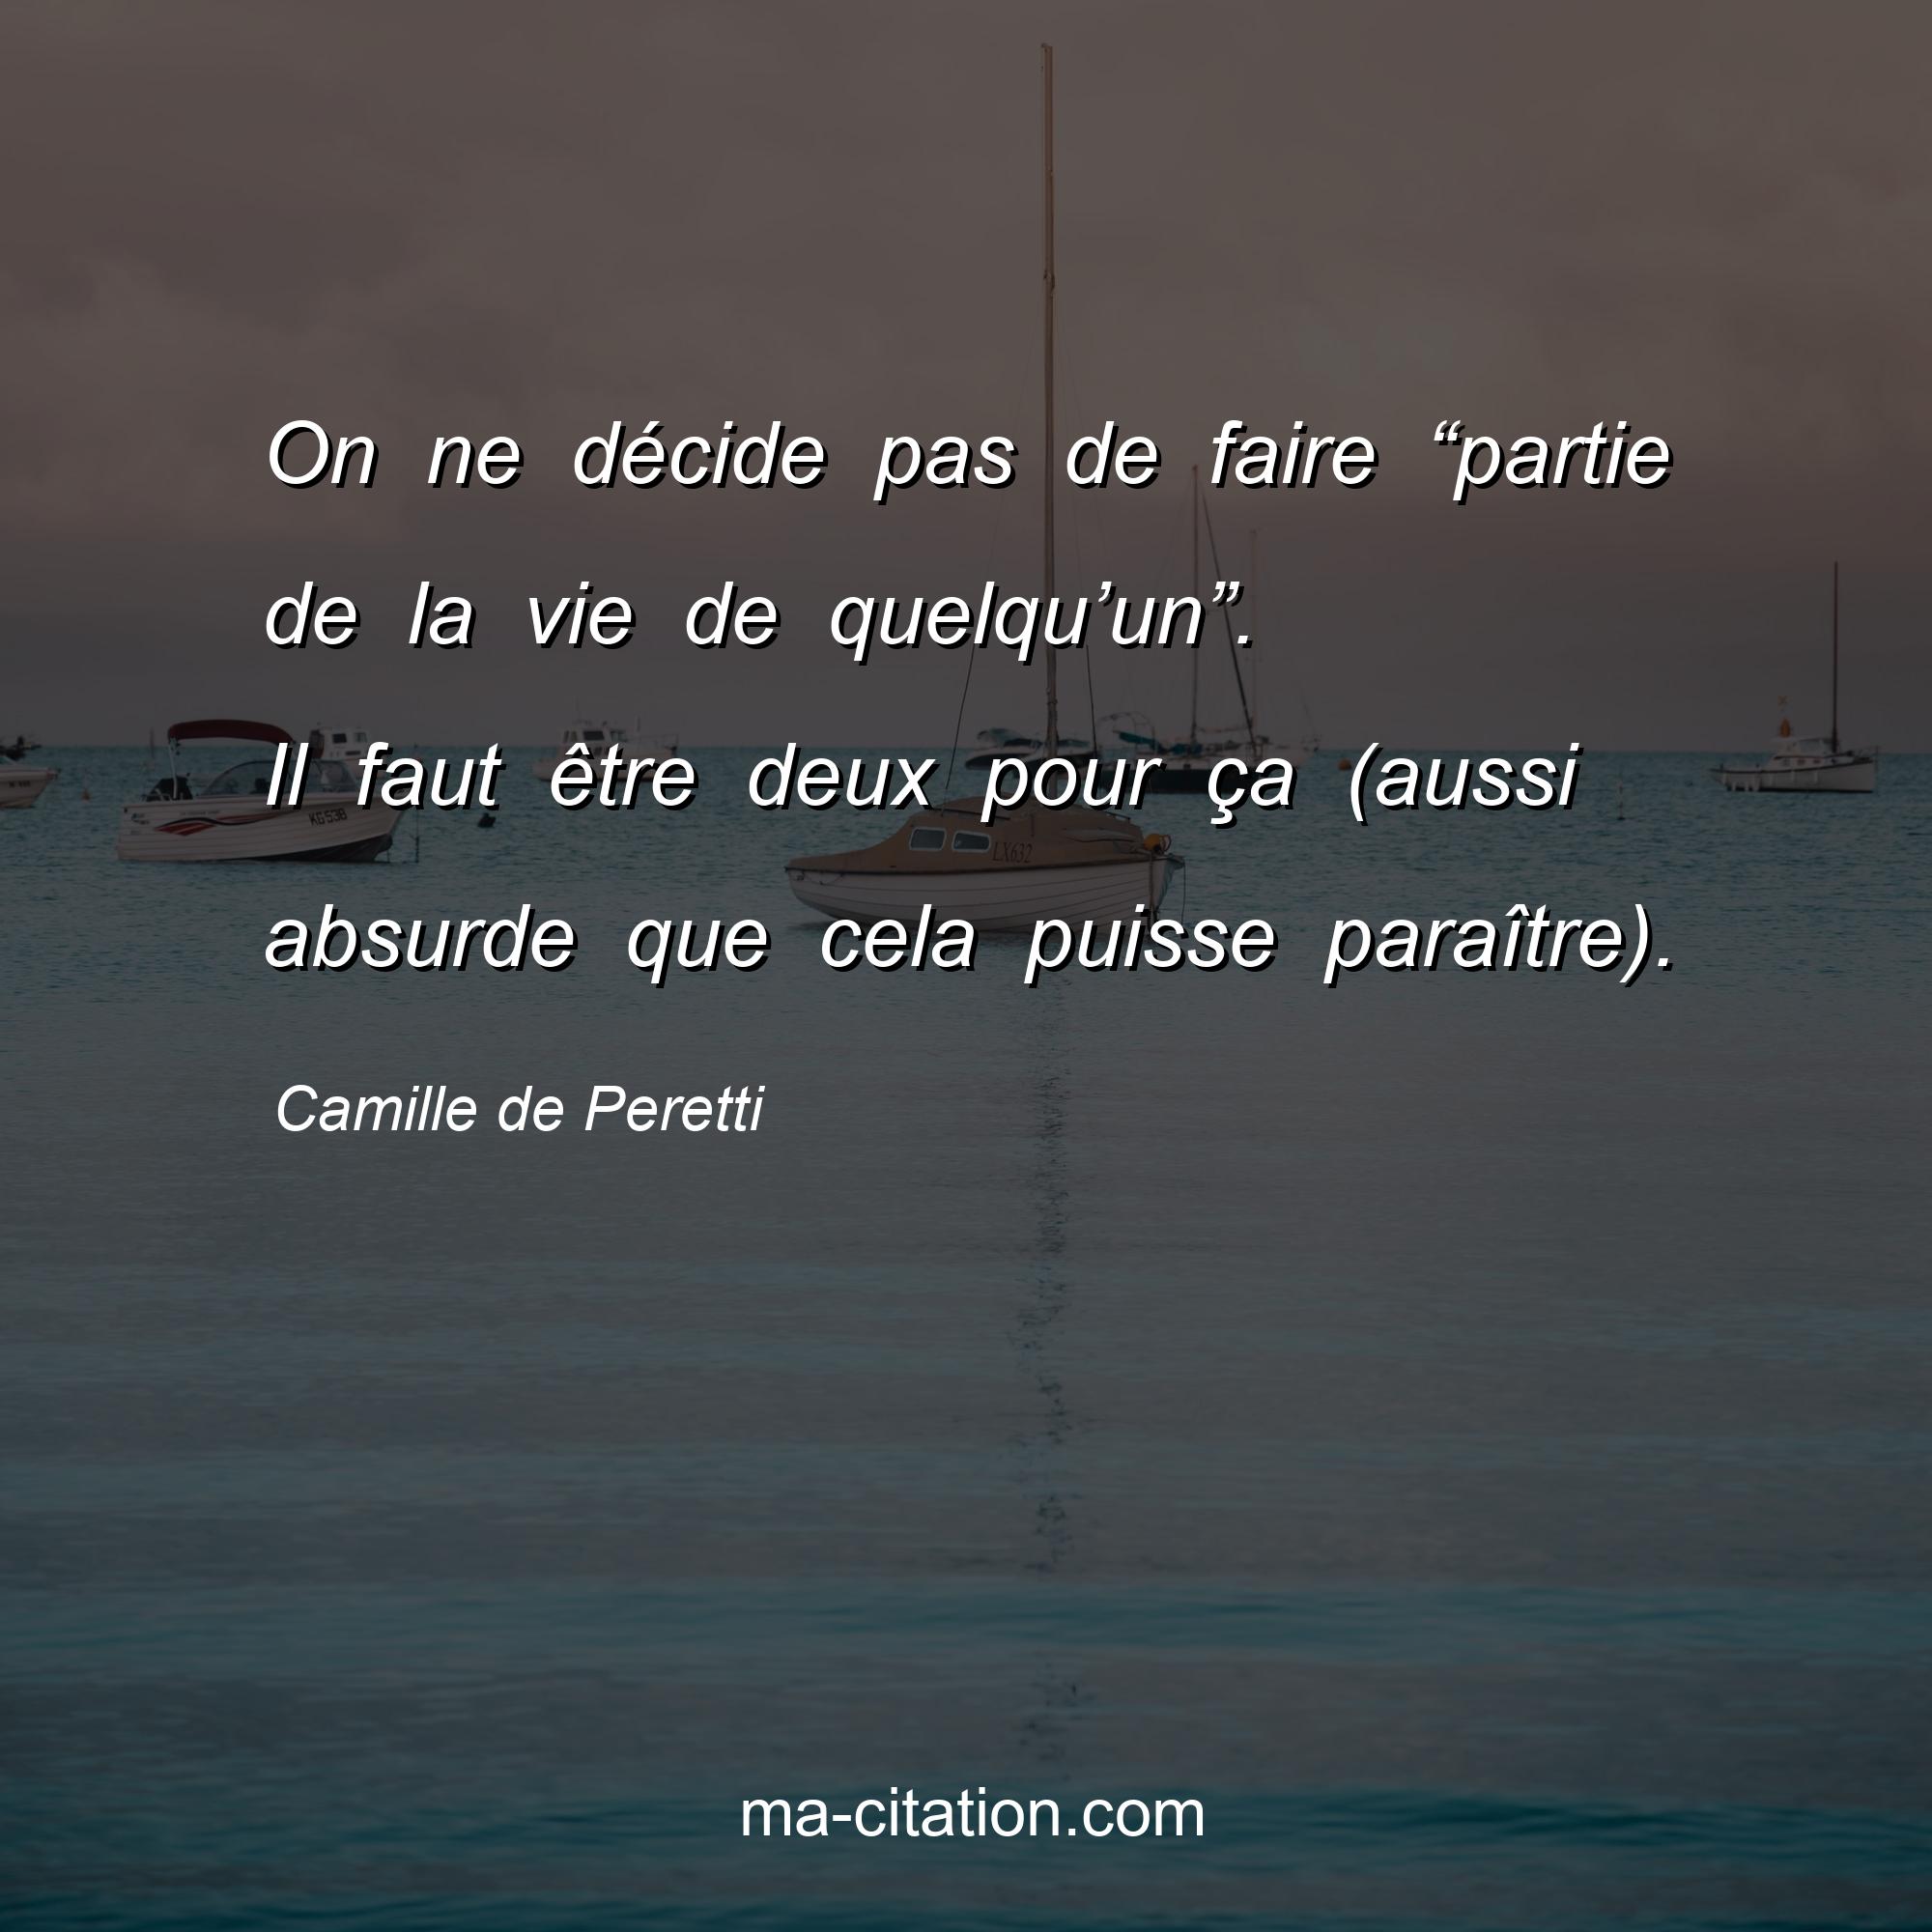 Camille de Peretti : On ne décide pas de faire “partie de la vie de quelqu’un”. Il faut être deux pour ça (aussi absurde que cela puisse paraître).